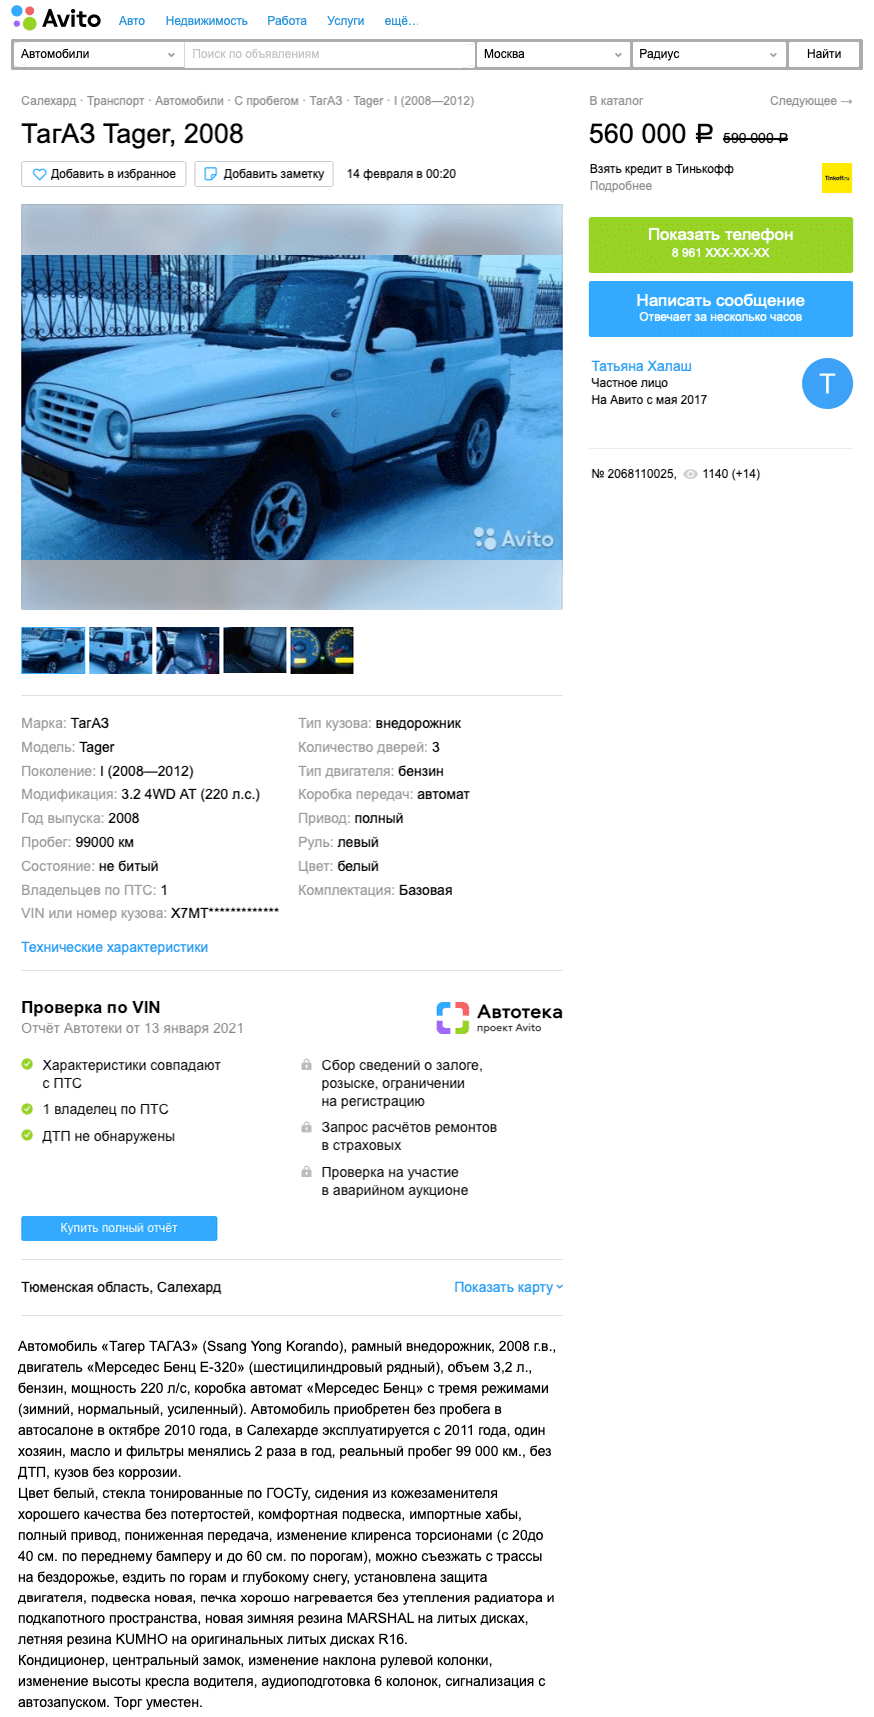 SsangYong Korando или Tagaz Tager: стоит ли покупать за 500 тысяч - КОЛЕСА.ру – автомобильный журнал